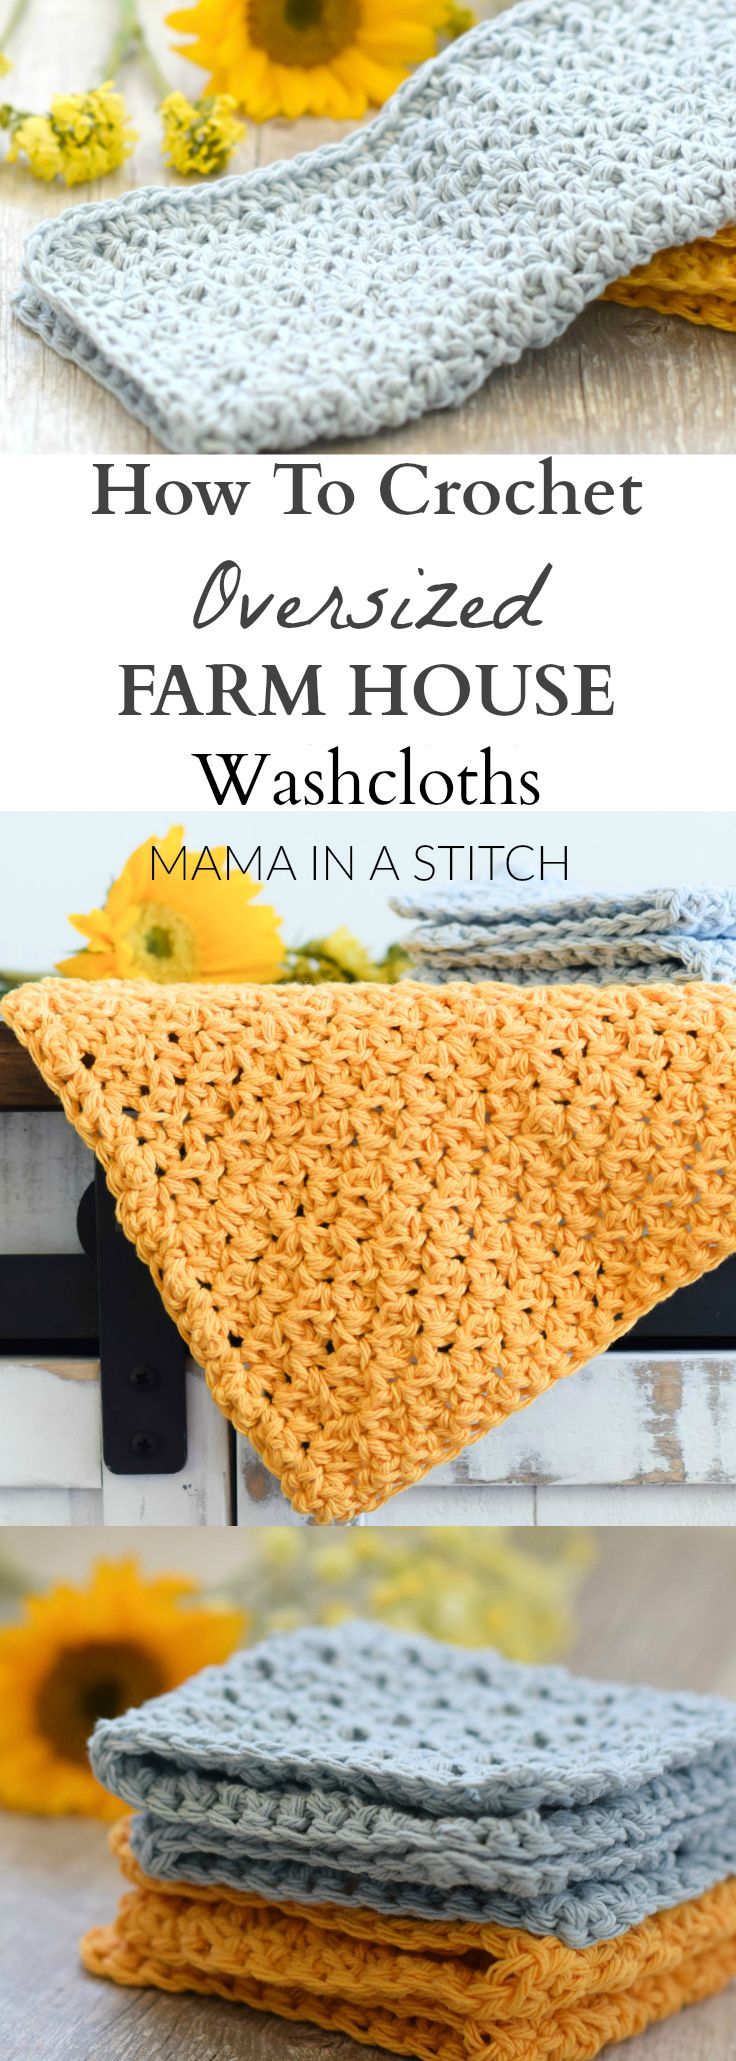 Farm-House-Washcloth-Crochet-Pattern.jpg